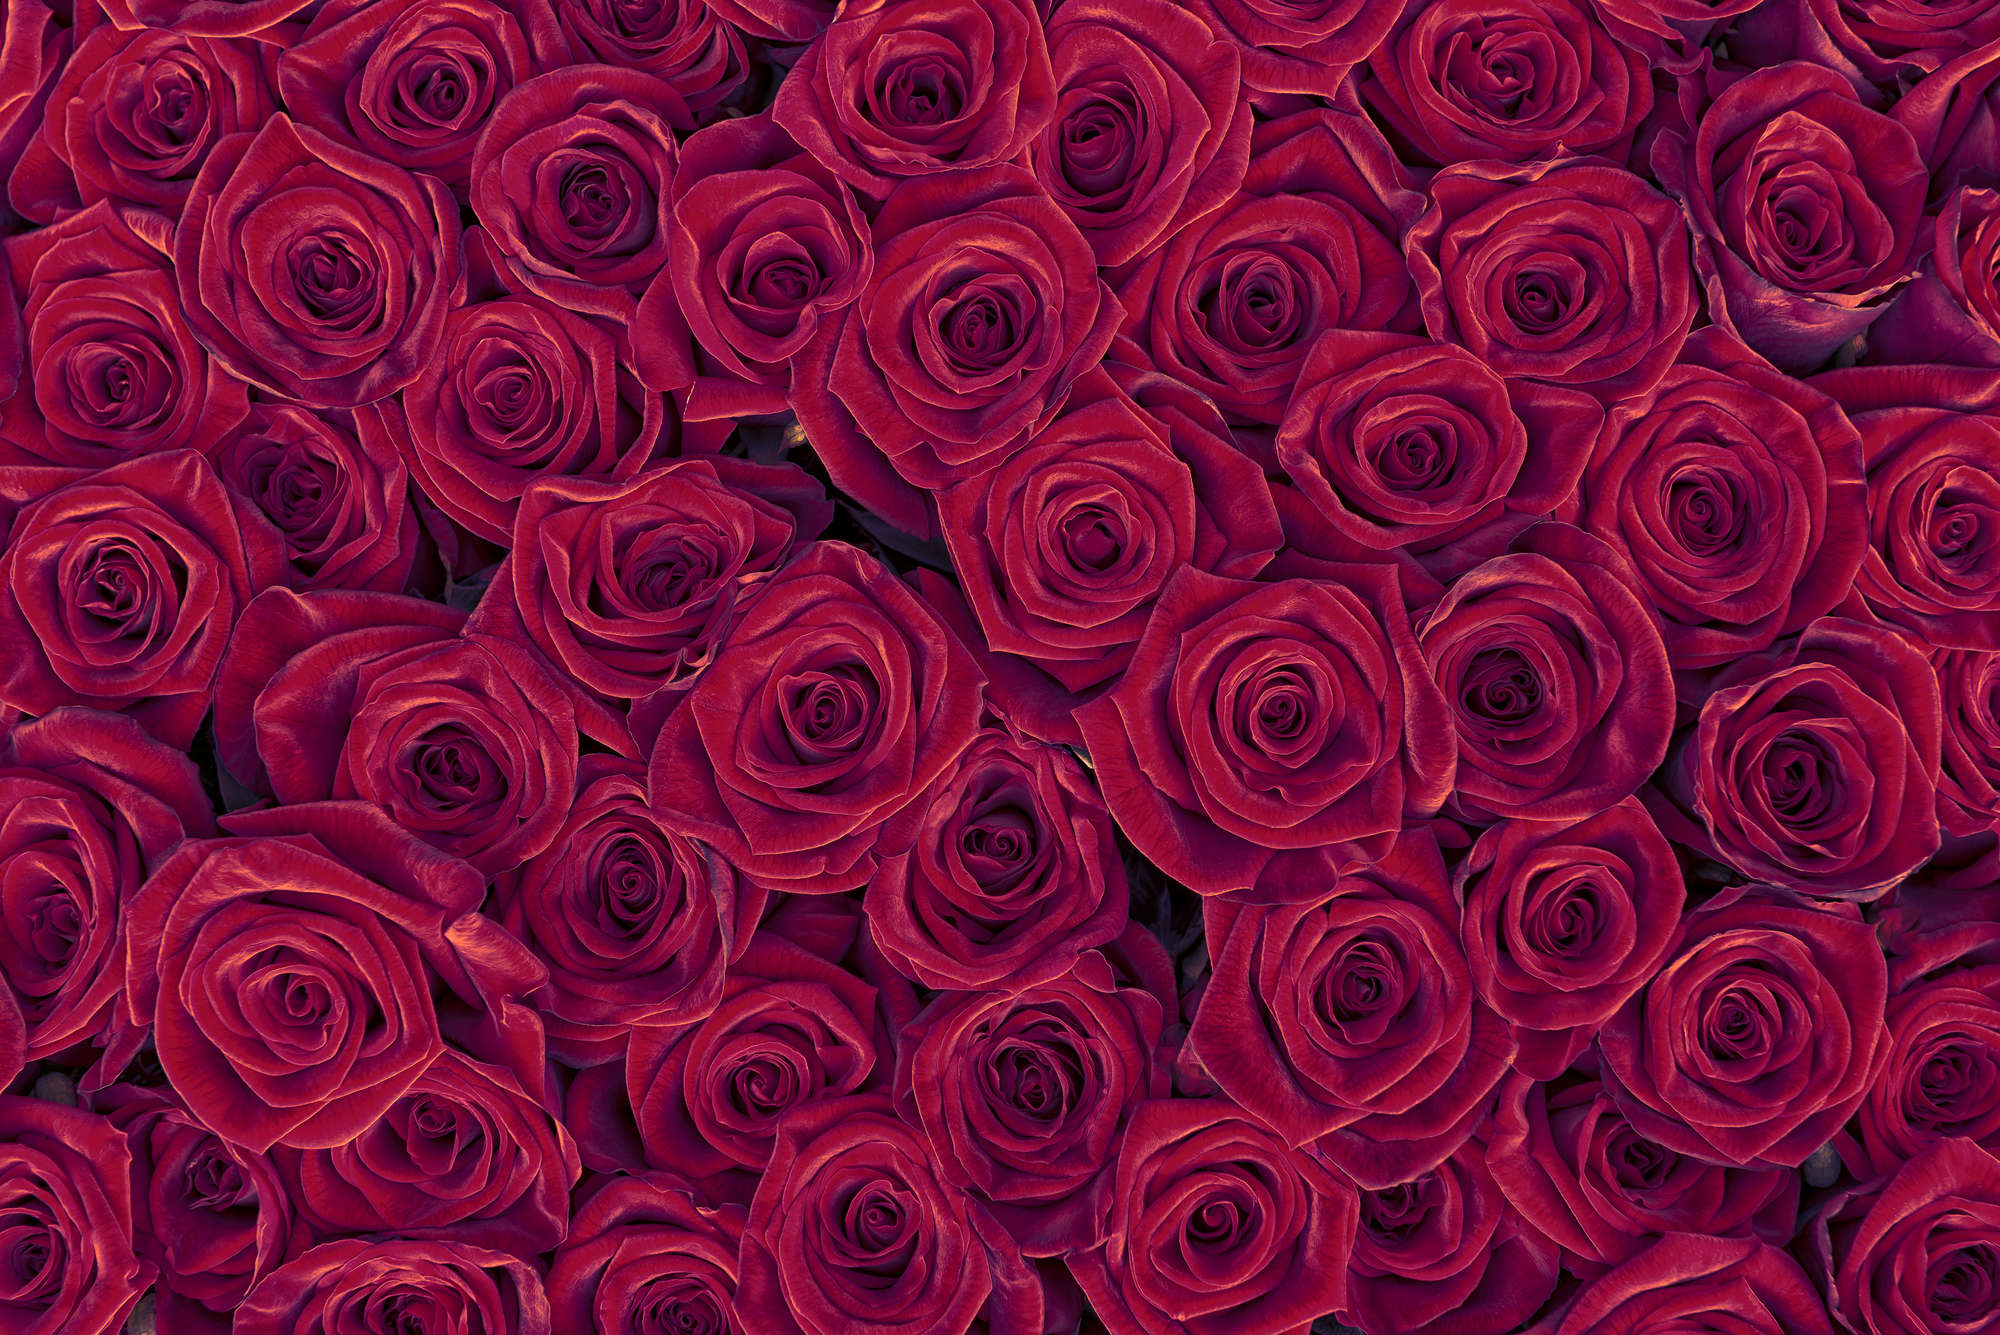             Papier peint végétal roses rouges sur nacre intissé lisse
        